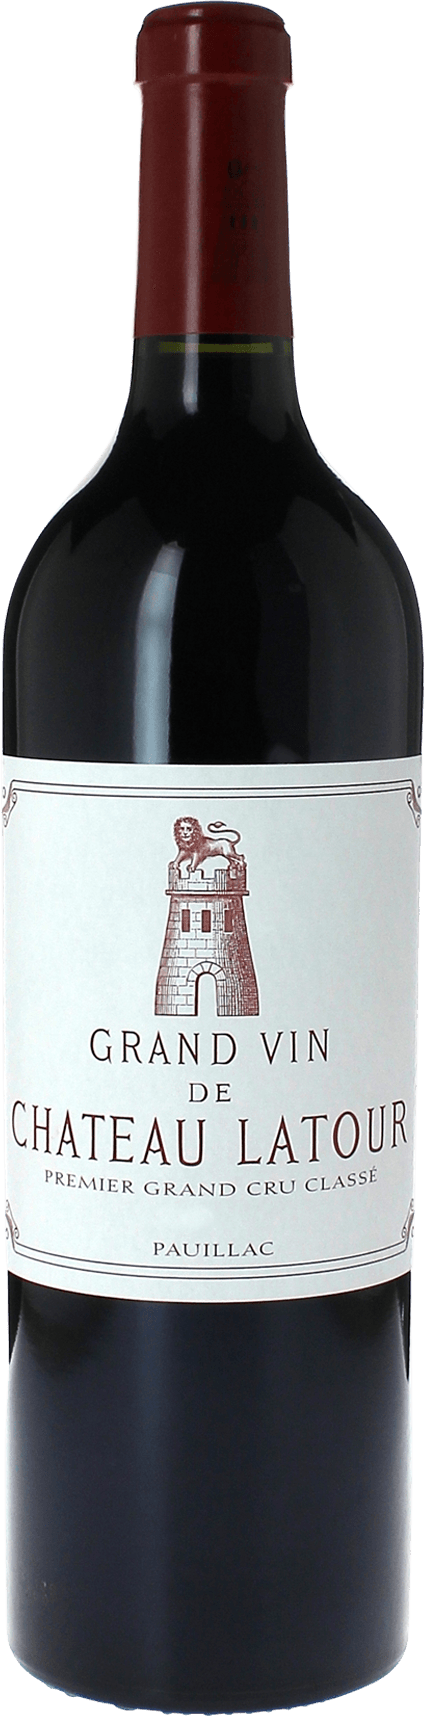 Latour 2015 1er Grand cru class Pauillac, Bordeaux rouge